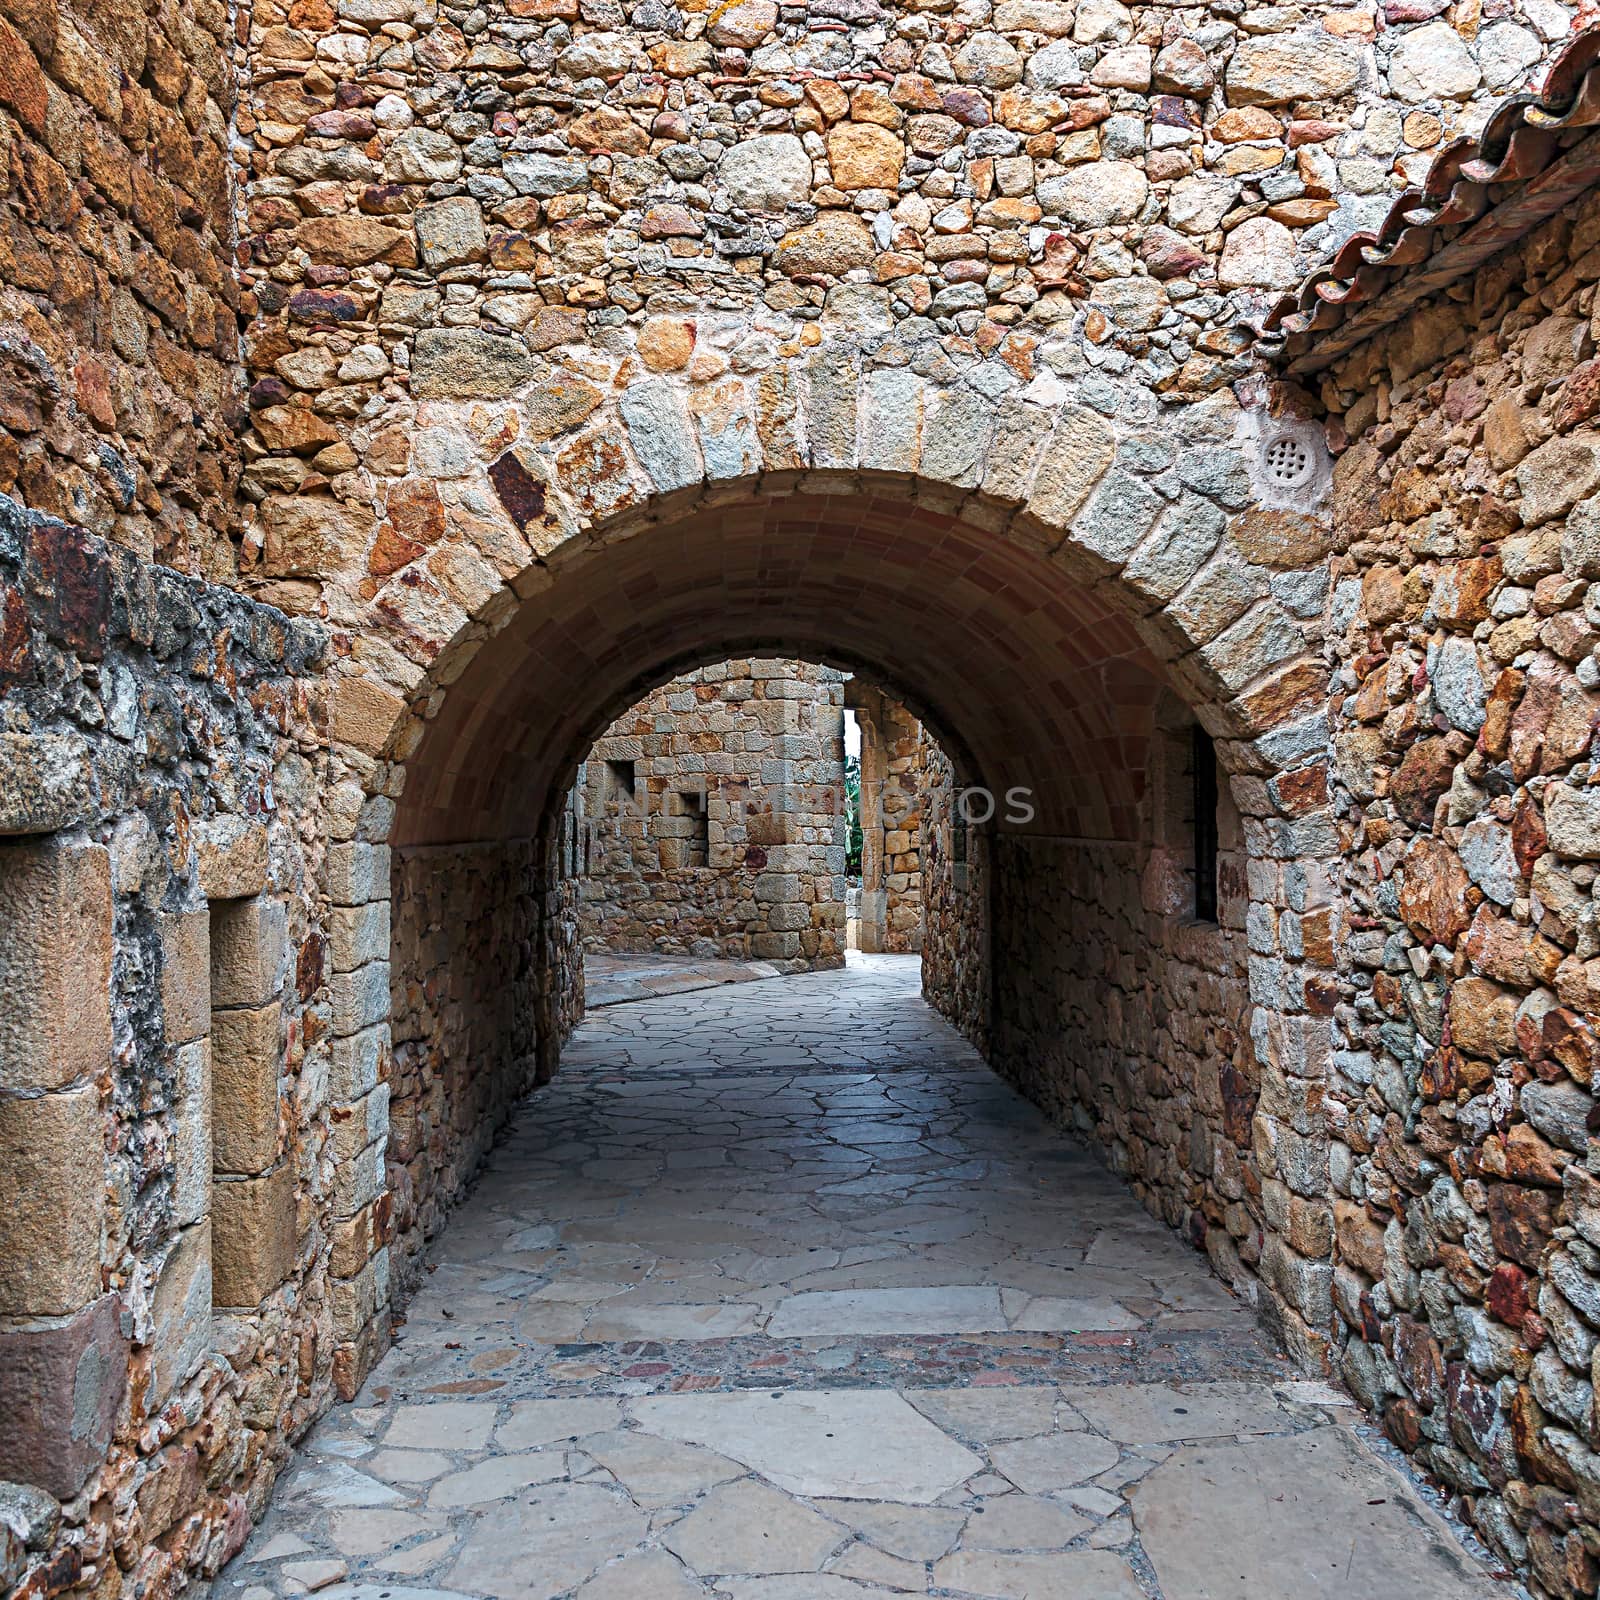 Castle de Pals, historic stone walls and arches, Pals, Spain



